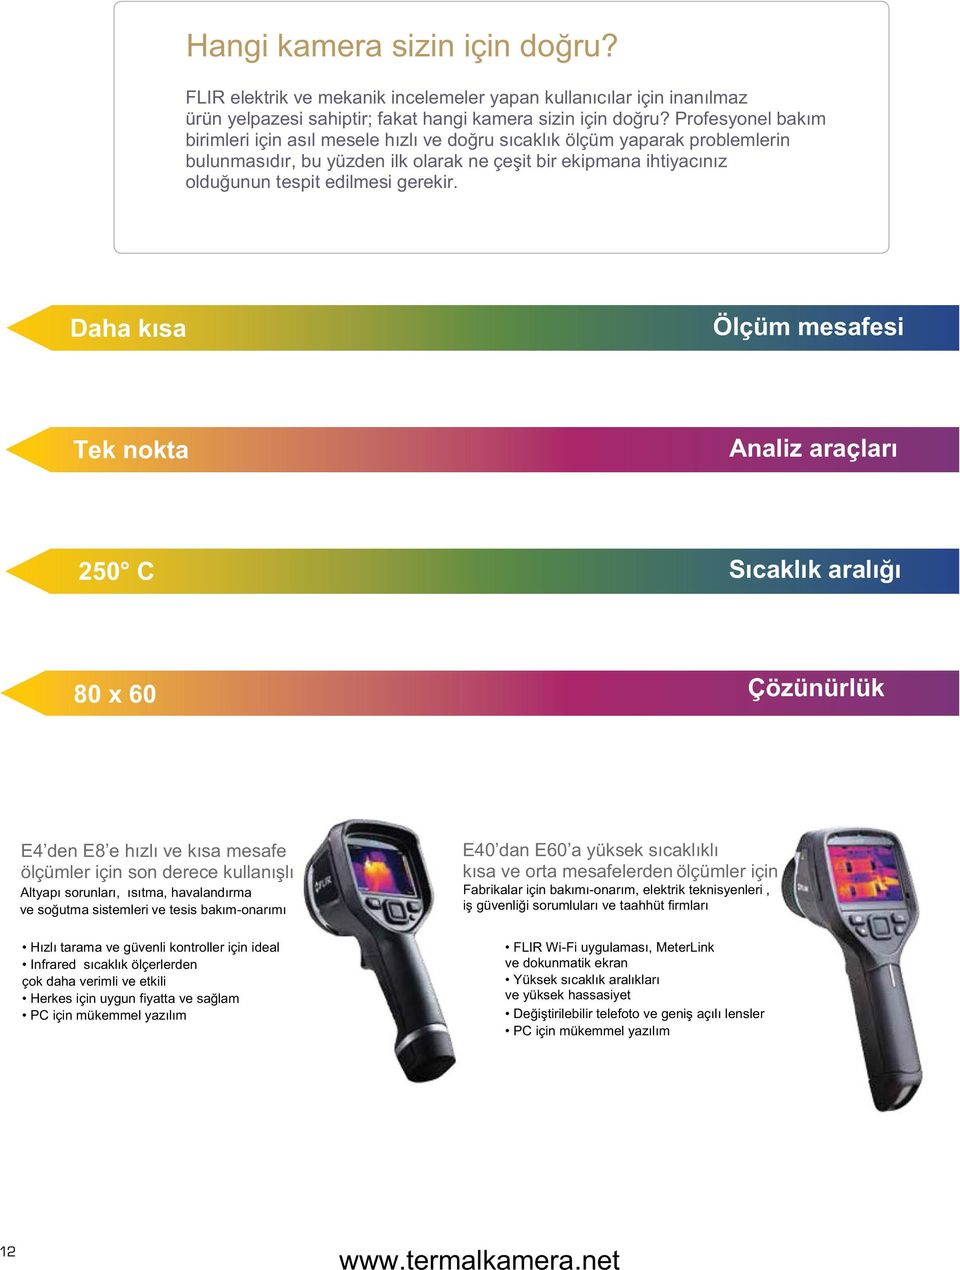 ideal Infrared çok daha verimli ve etkili 0 n ölçümler için Fabrikalar